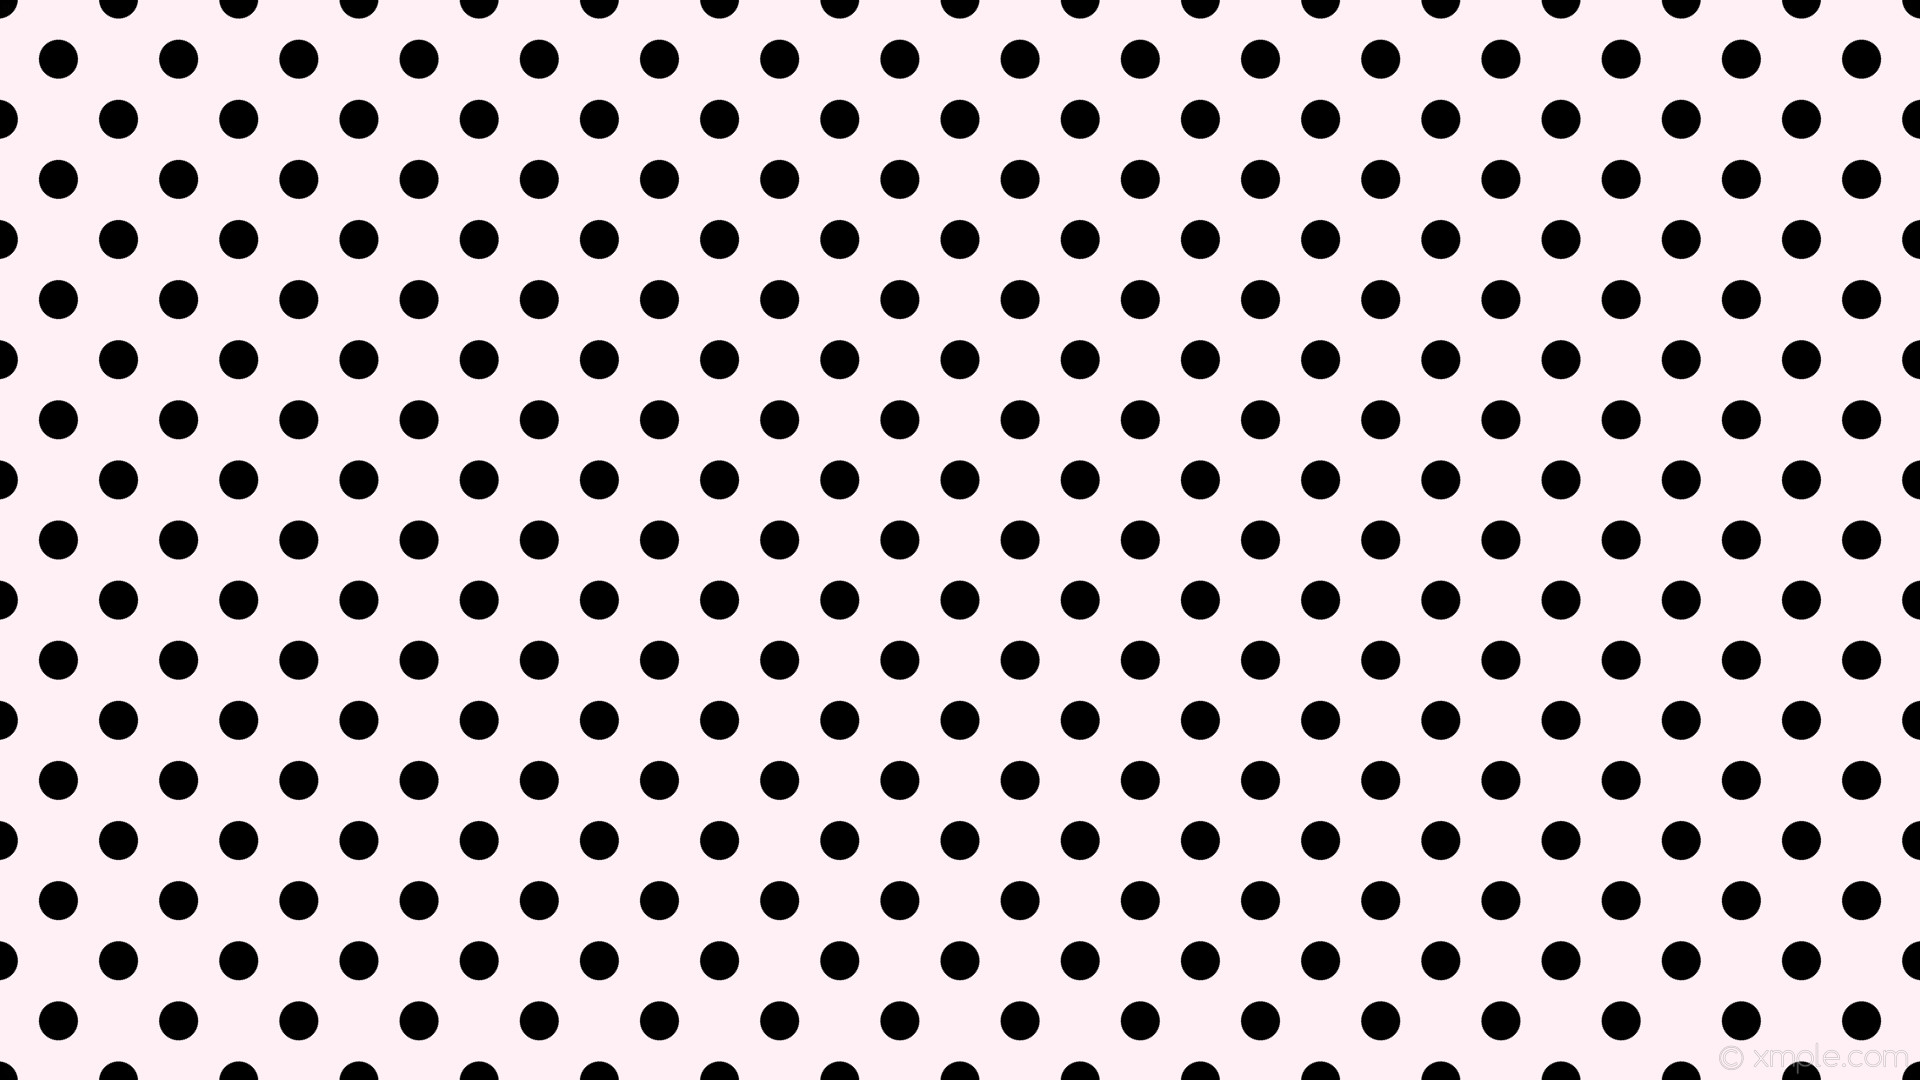 1920x1080 wallpaper white spots black polka dots lavender blush #fff0f5 #000000 135Â°  39px 85px